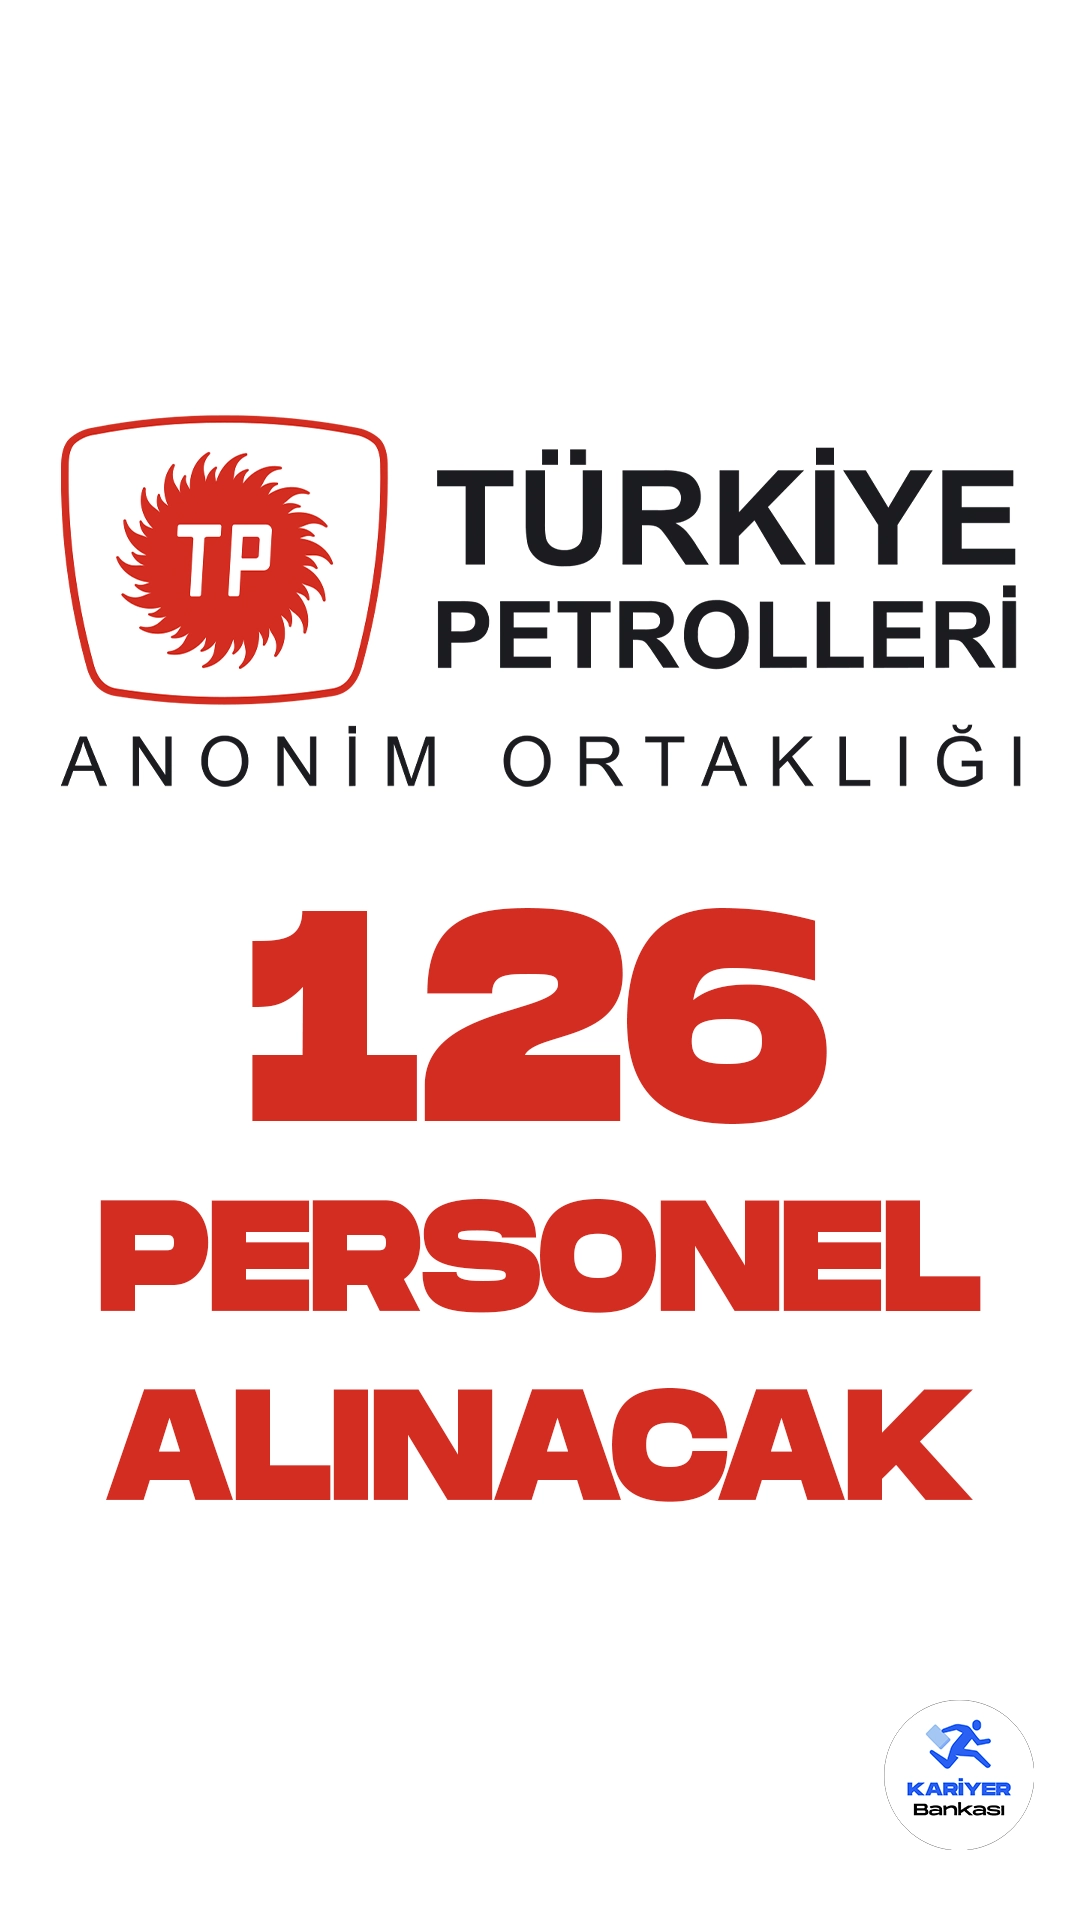 Türkiye Petrolleri Anonim Ortaklığı (TPAO) 126 personel alımı yapacak. Resmi Gazete ve Cumhurbaşkanlığı SBB'de yayımlanan duyuruda, TPAO'ya üretim operatör yardımcısı, elektrikçi, malzeme eksperi-, harita teknisyeni, bakım onarımcı, servis görevlisi, inşaat teknisyeni, tesisatçı, iş güvenliği teknisyeni, denetim ve kontrol sorumlusu, sistem destekçisi, arşivci, araç takip sorumlusu tedarik ve lojistik görevlisi, sosyal tesis görevlisi, elektronikçi, laboratuvar sorumlusu, ağır vasıta operatör yardımcısı, güç sistemleri mekanik operatörü unvanlarında olmak üzere 126 personel alınacağı aktarıldı.Başvuru yapacak adayların belirtilen şartları dikkatle incelemesi gerekmektedir.